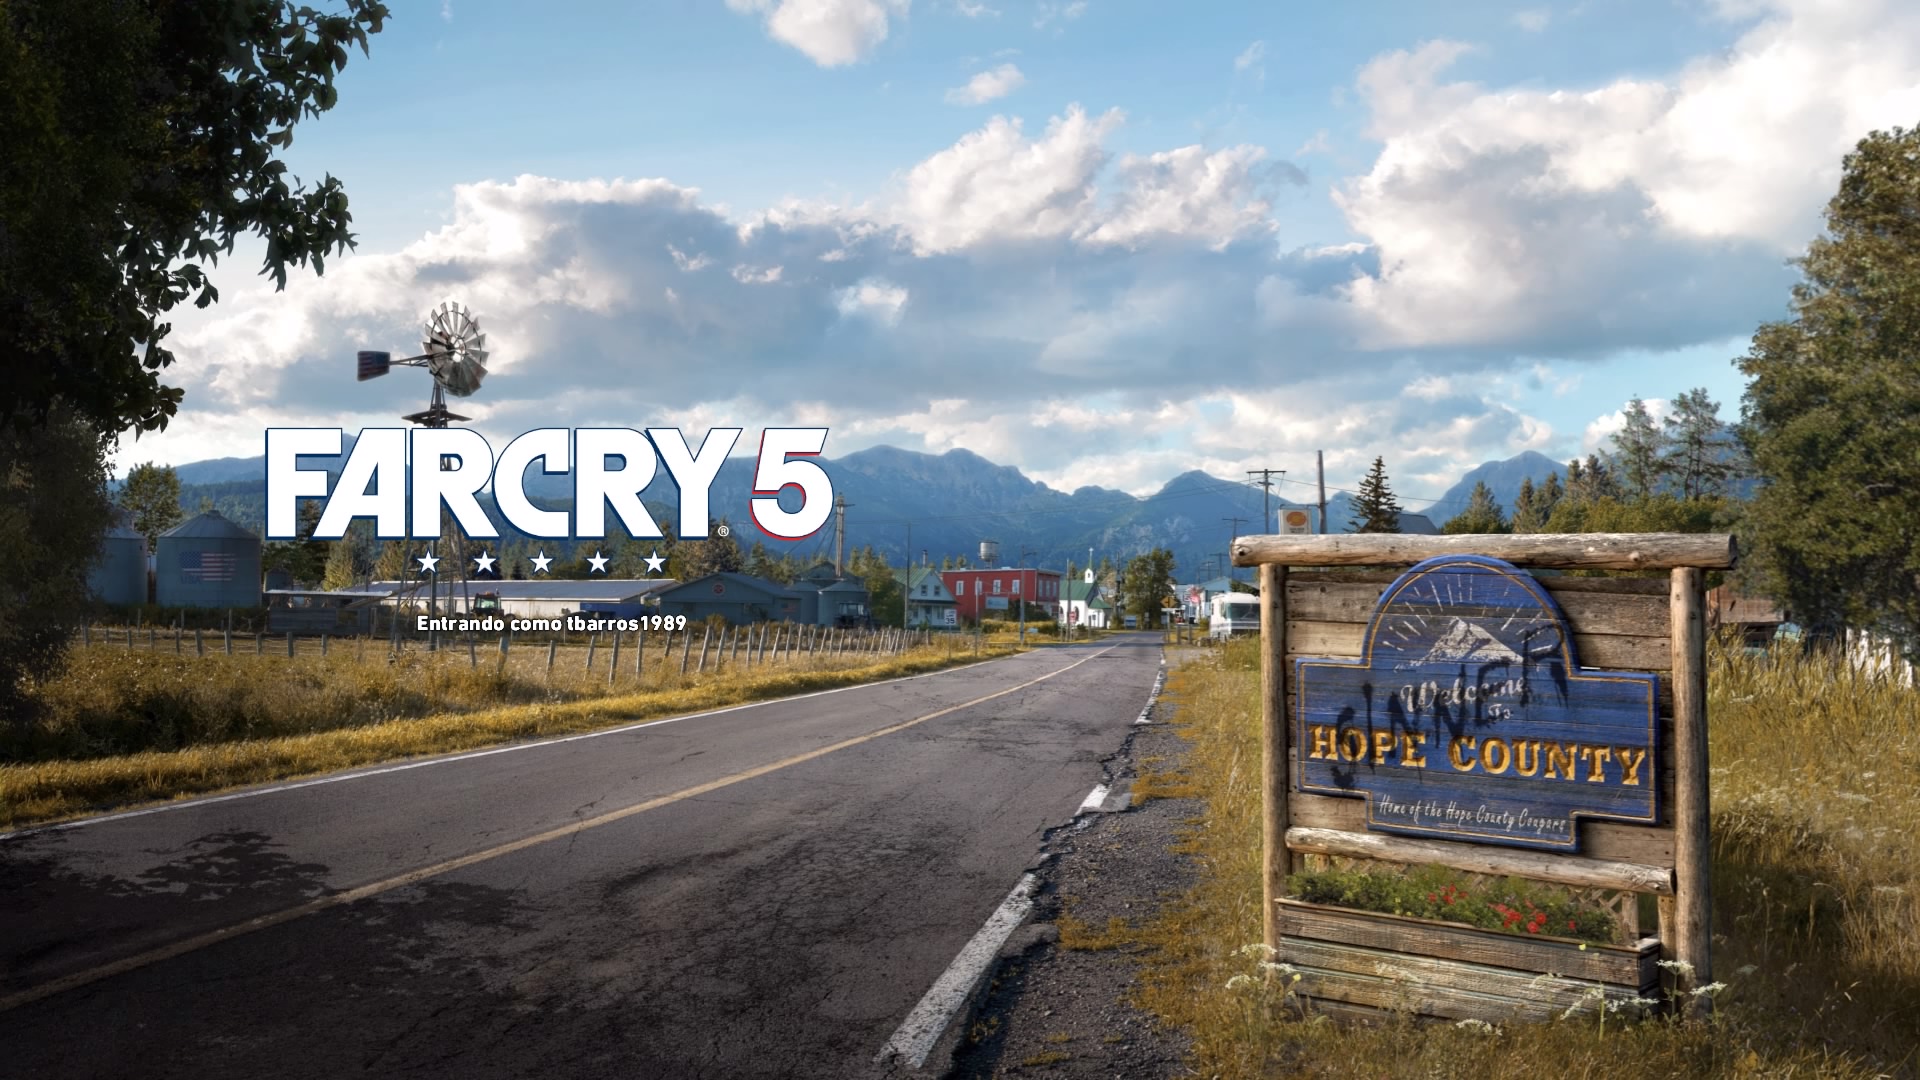 Análise  Far Cry 5 é a evolução necessária da franquia e dos